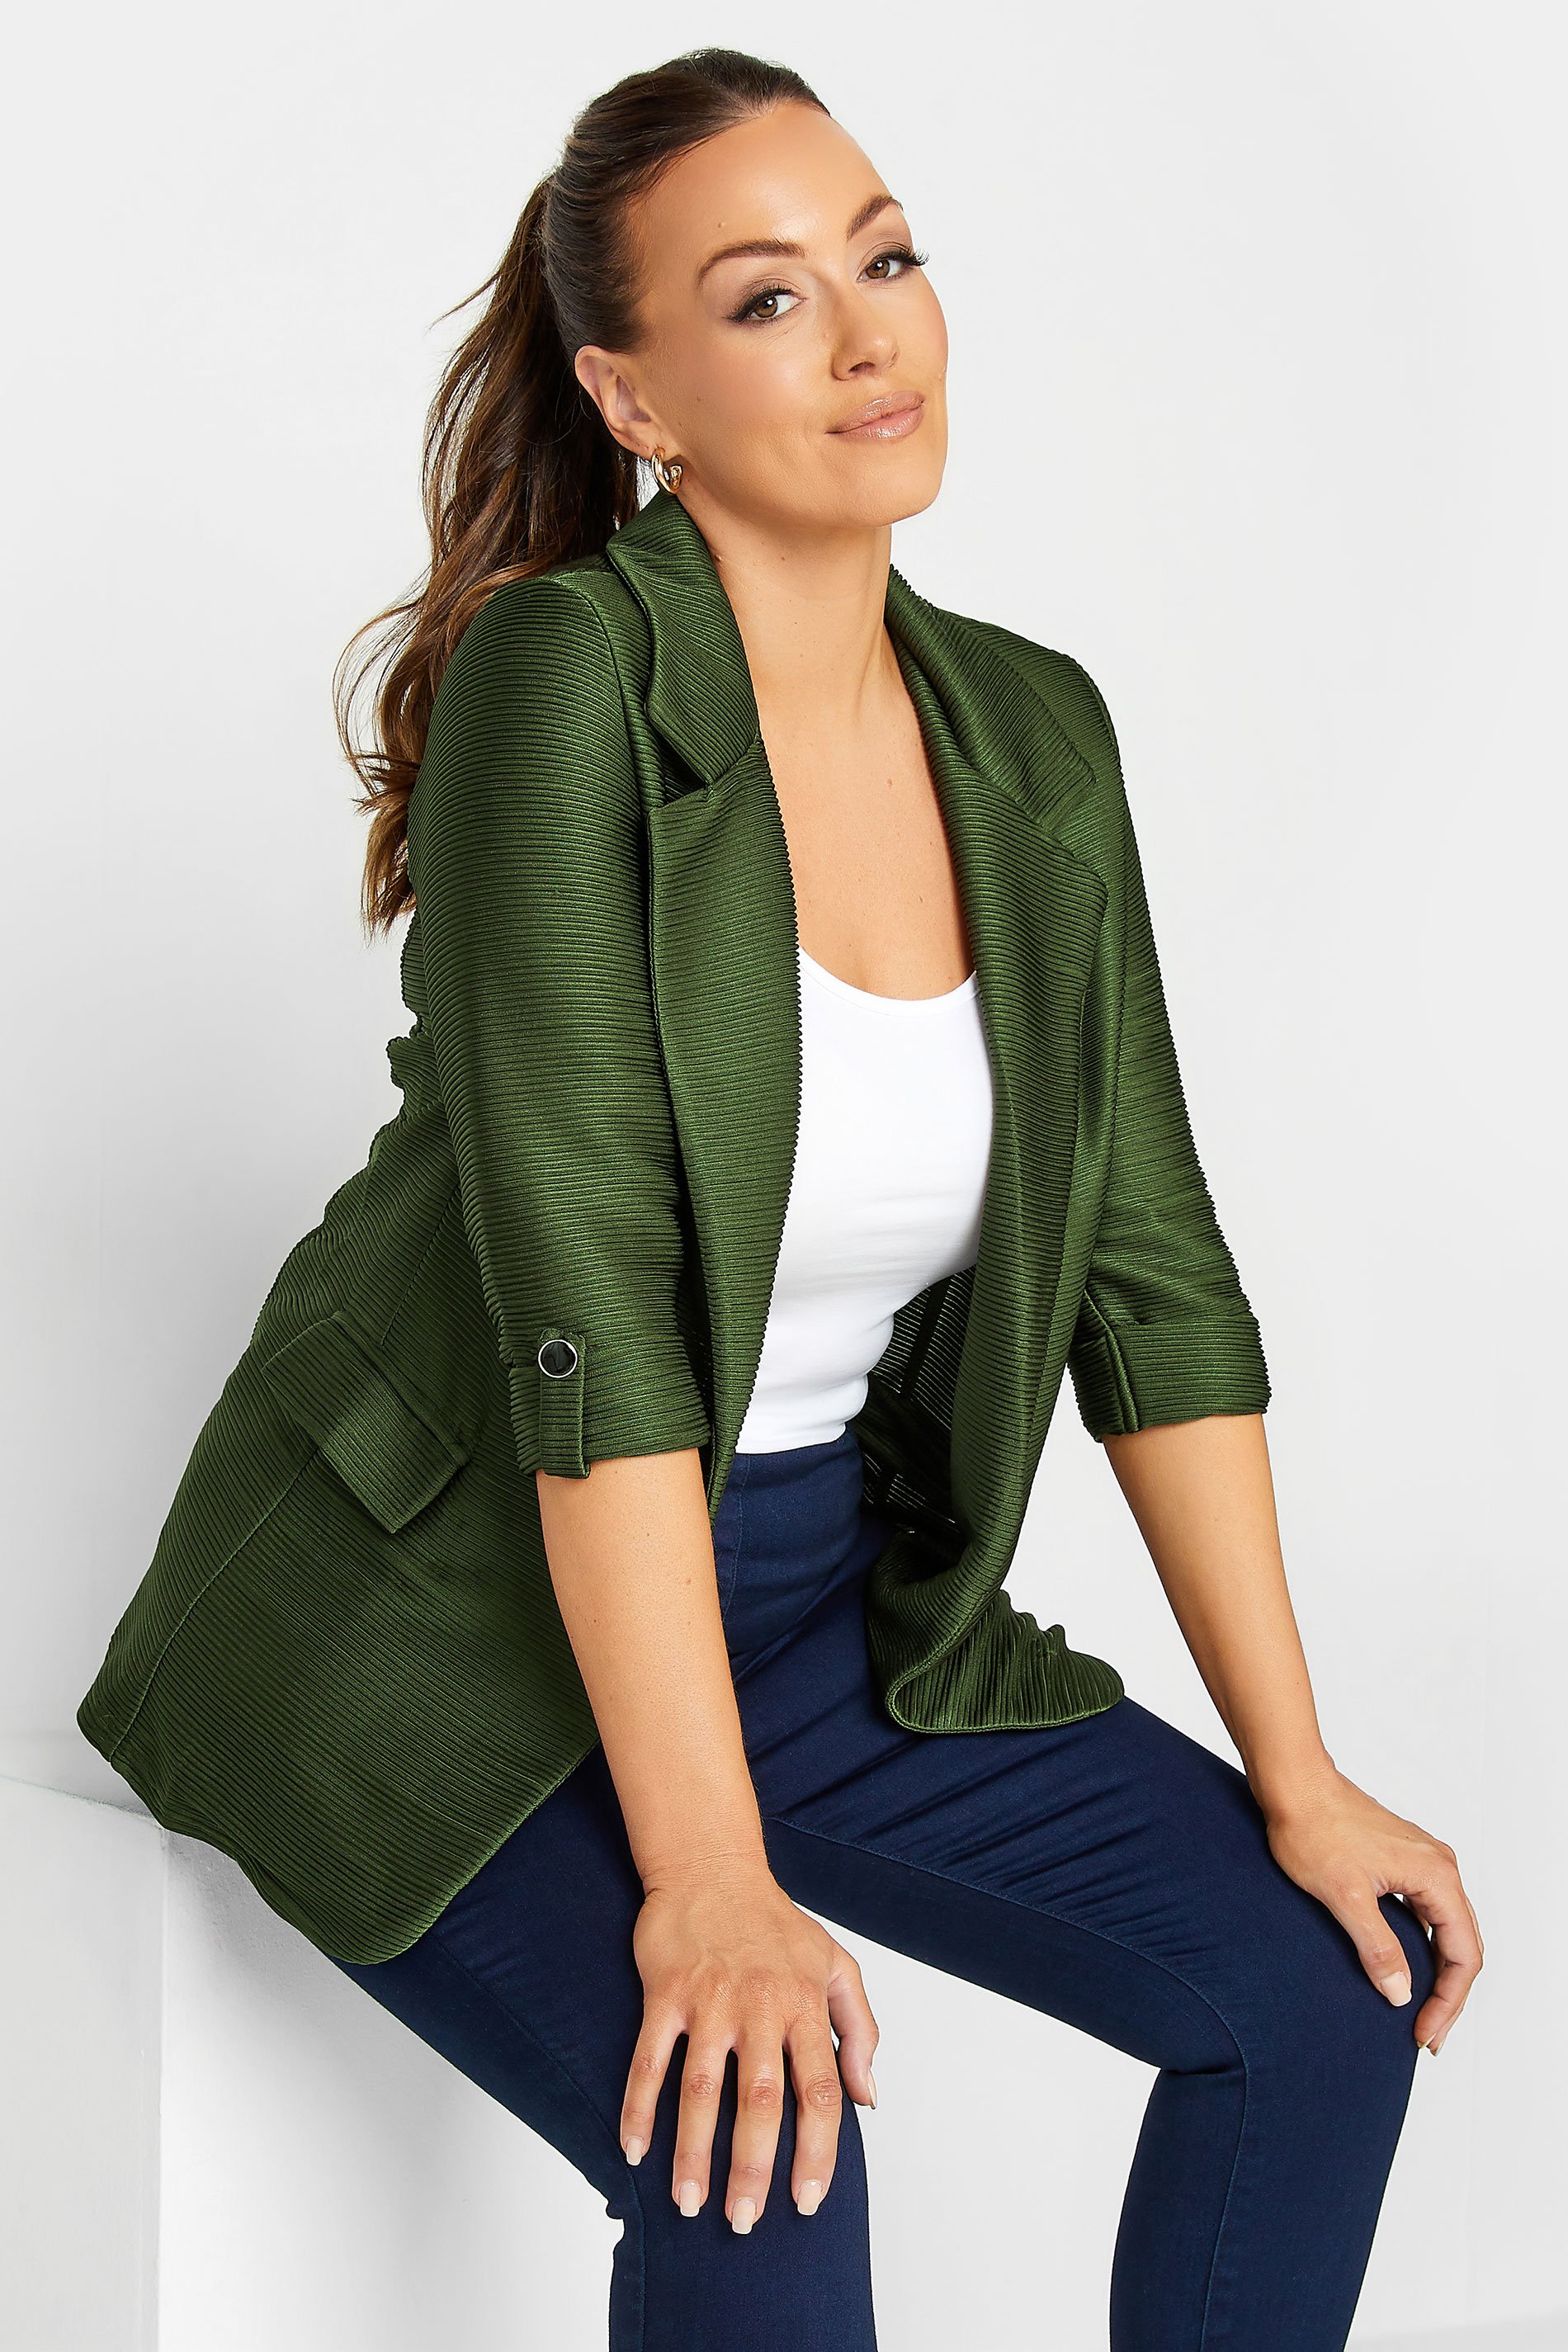 M&Co Khaki Green Textured Blazer | M&Co 1